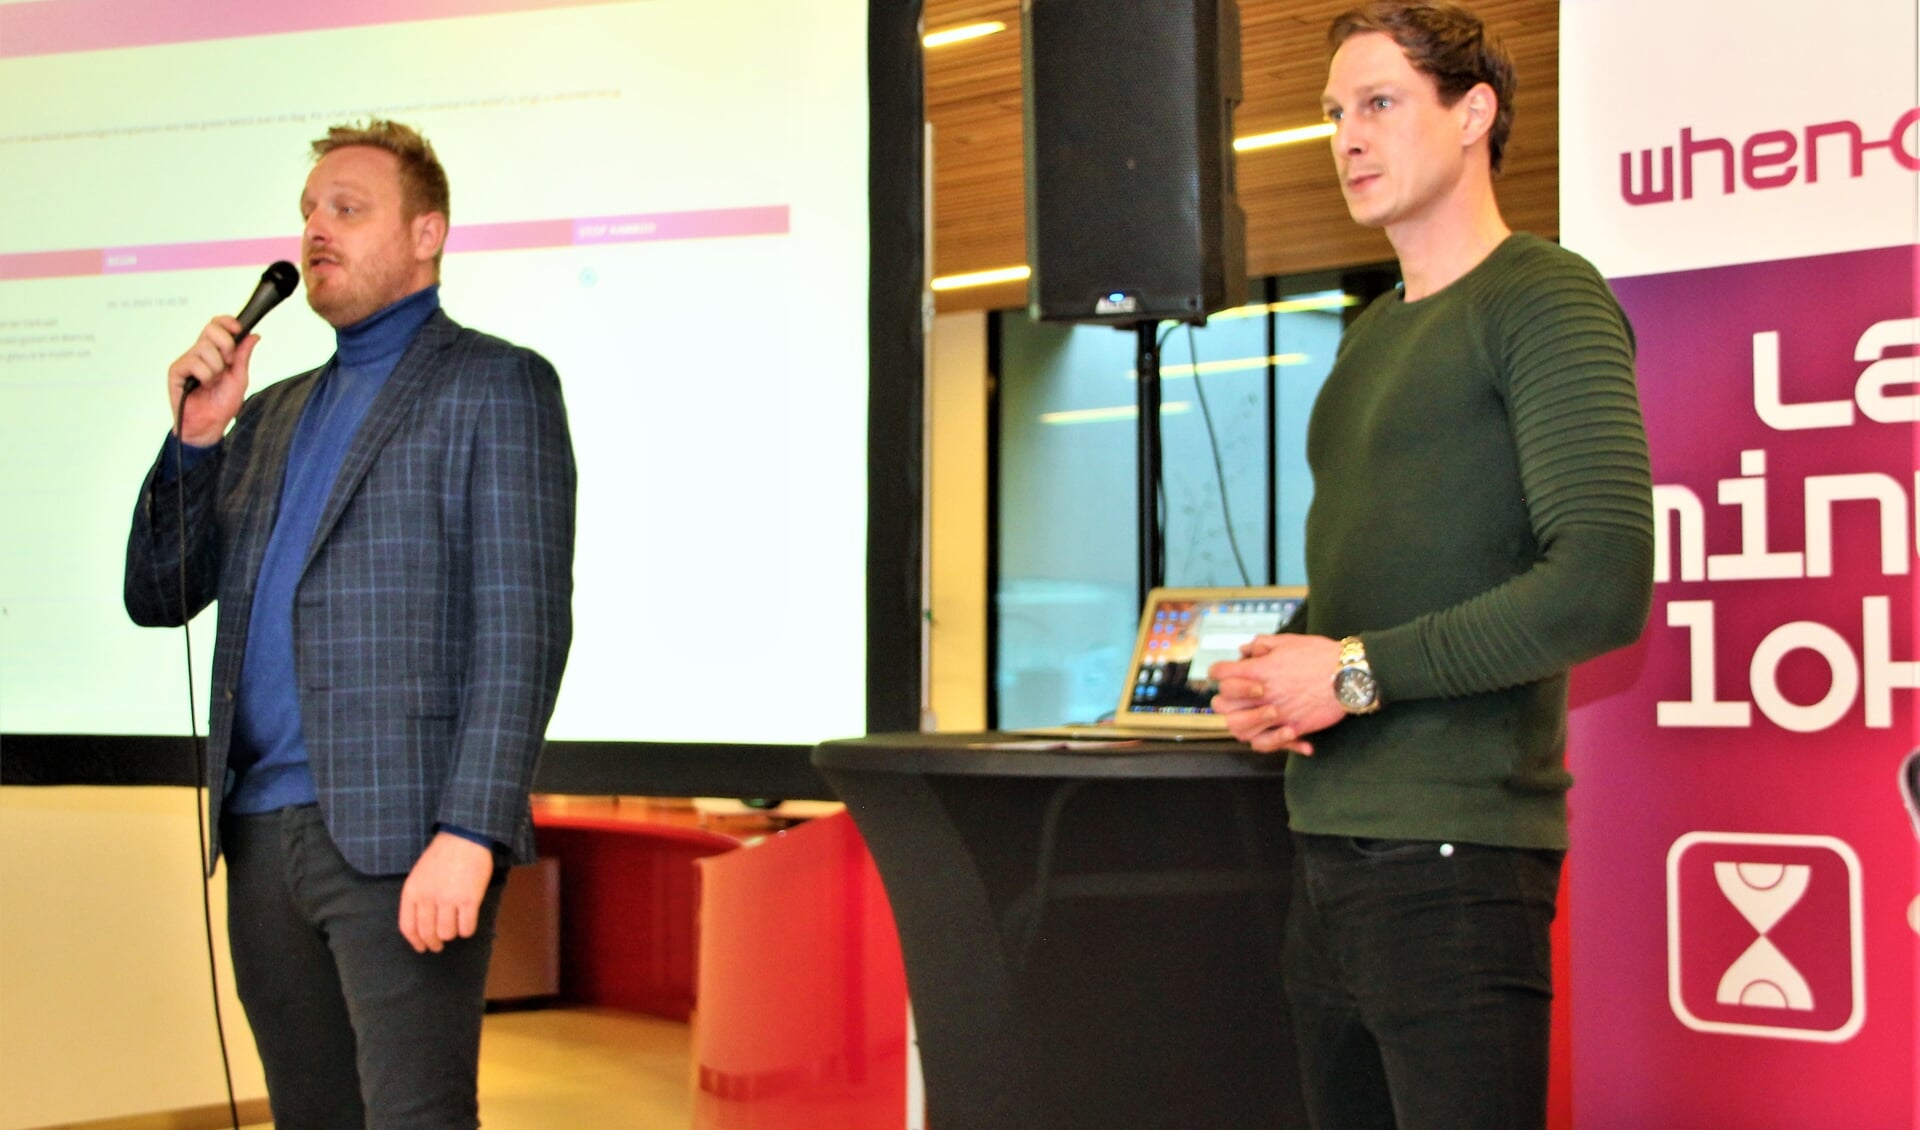 De initiatiefnemers Jasper van Tintelen en Gert Jan Parlevliet lanceren hun consumenten-app.